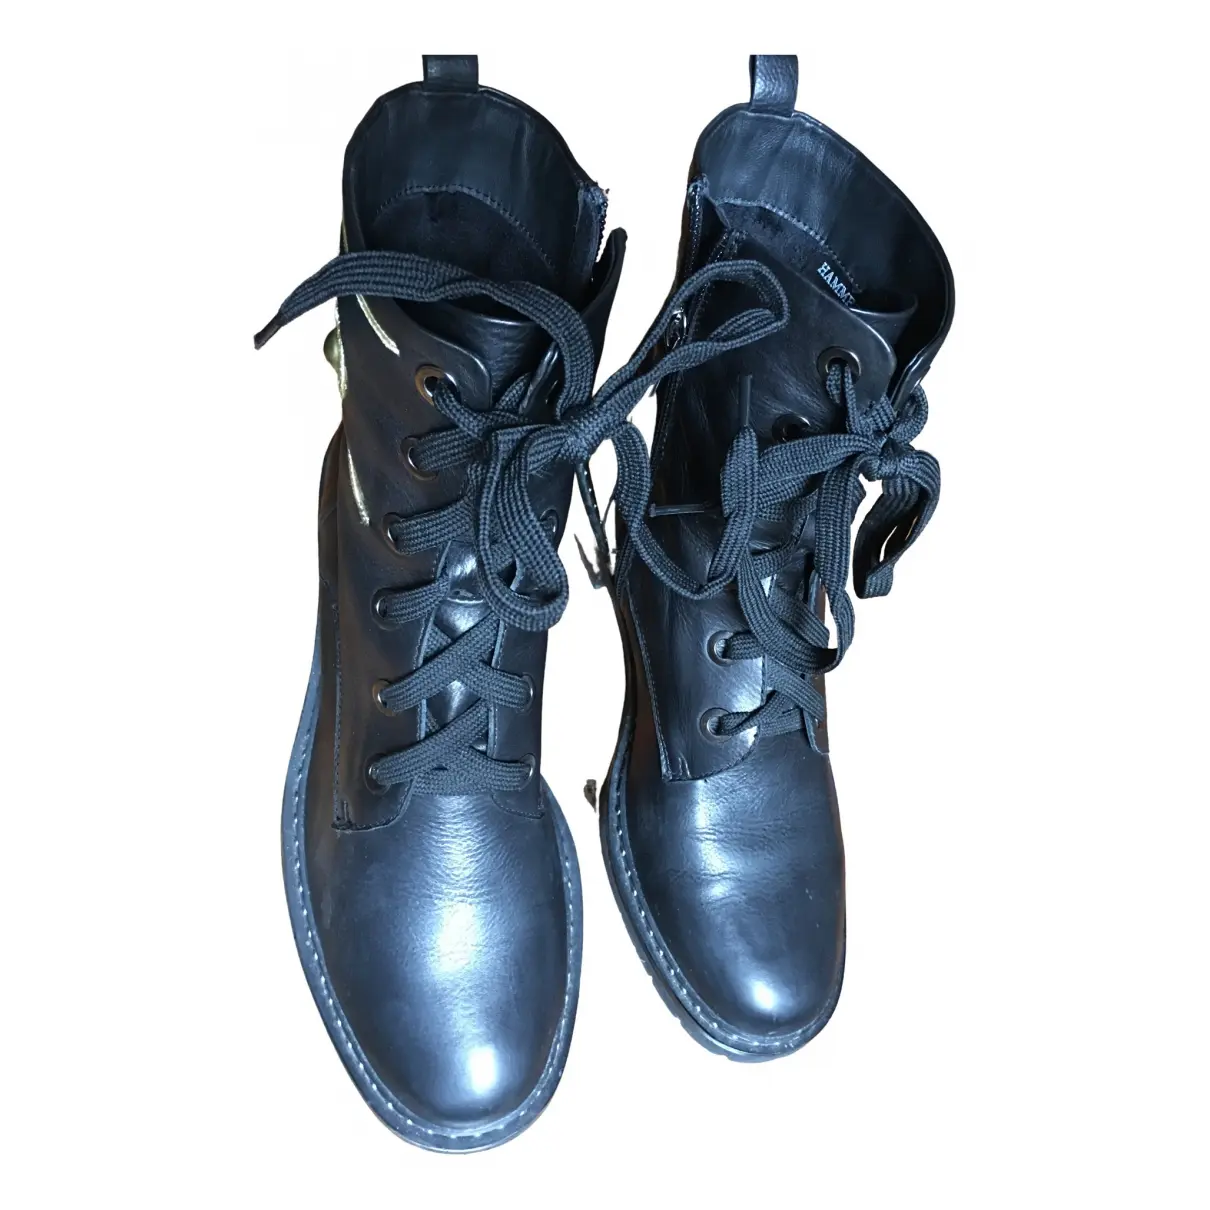 Leather biker boots Hammerstein